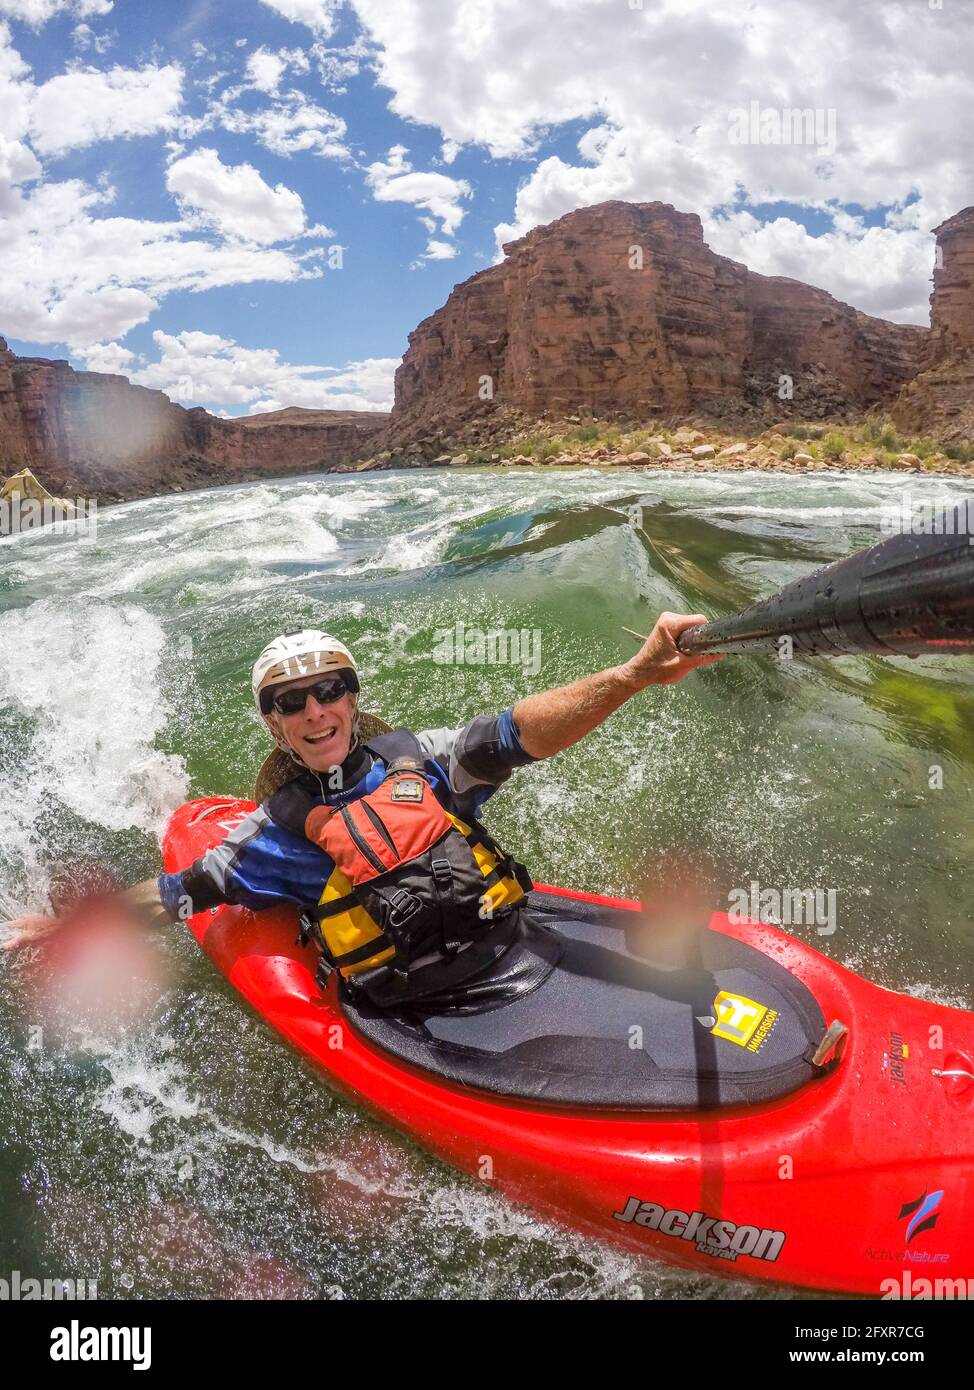 Skip Brown surfe son kayak en eau vive sur une vague vivivivivivivile sur le fleuve Colorado à travers le Grand Canyon, Arizona, États-Unis, Amérique du Nord Banque D'Images